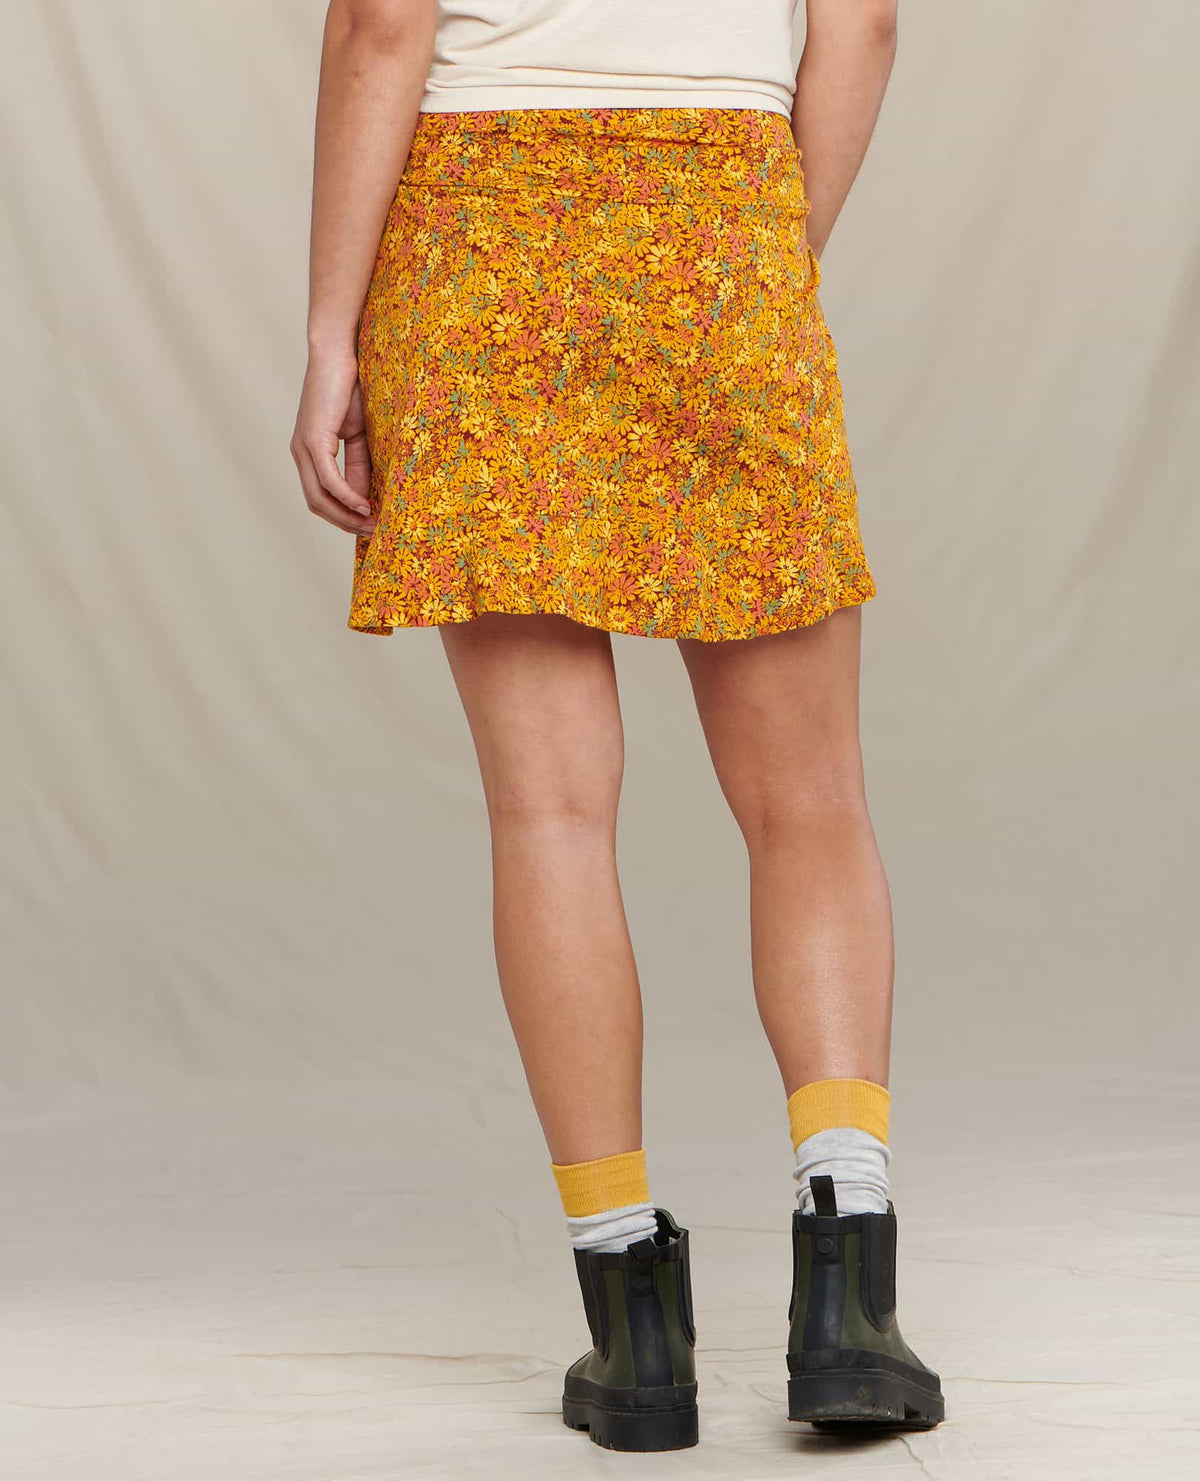 Chaka Ruffle Skirt - Sale